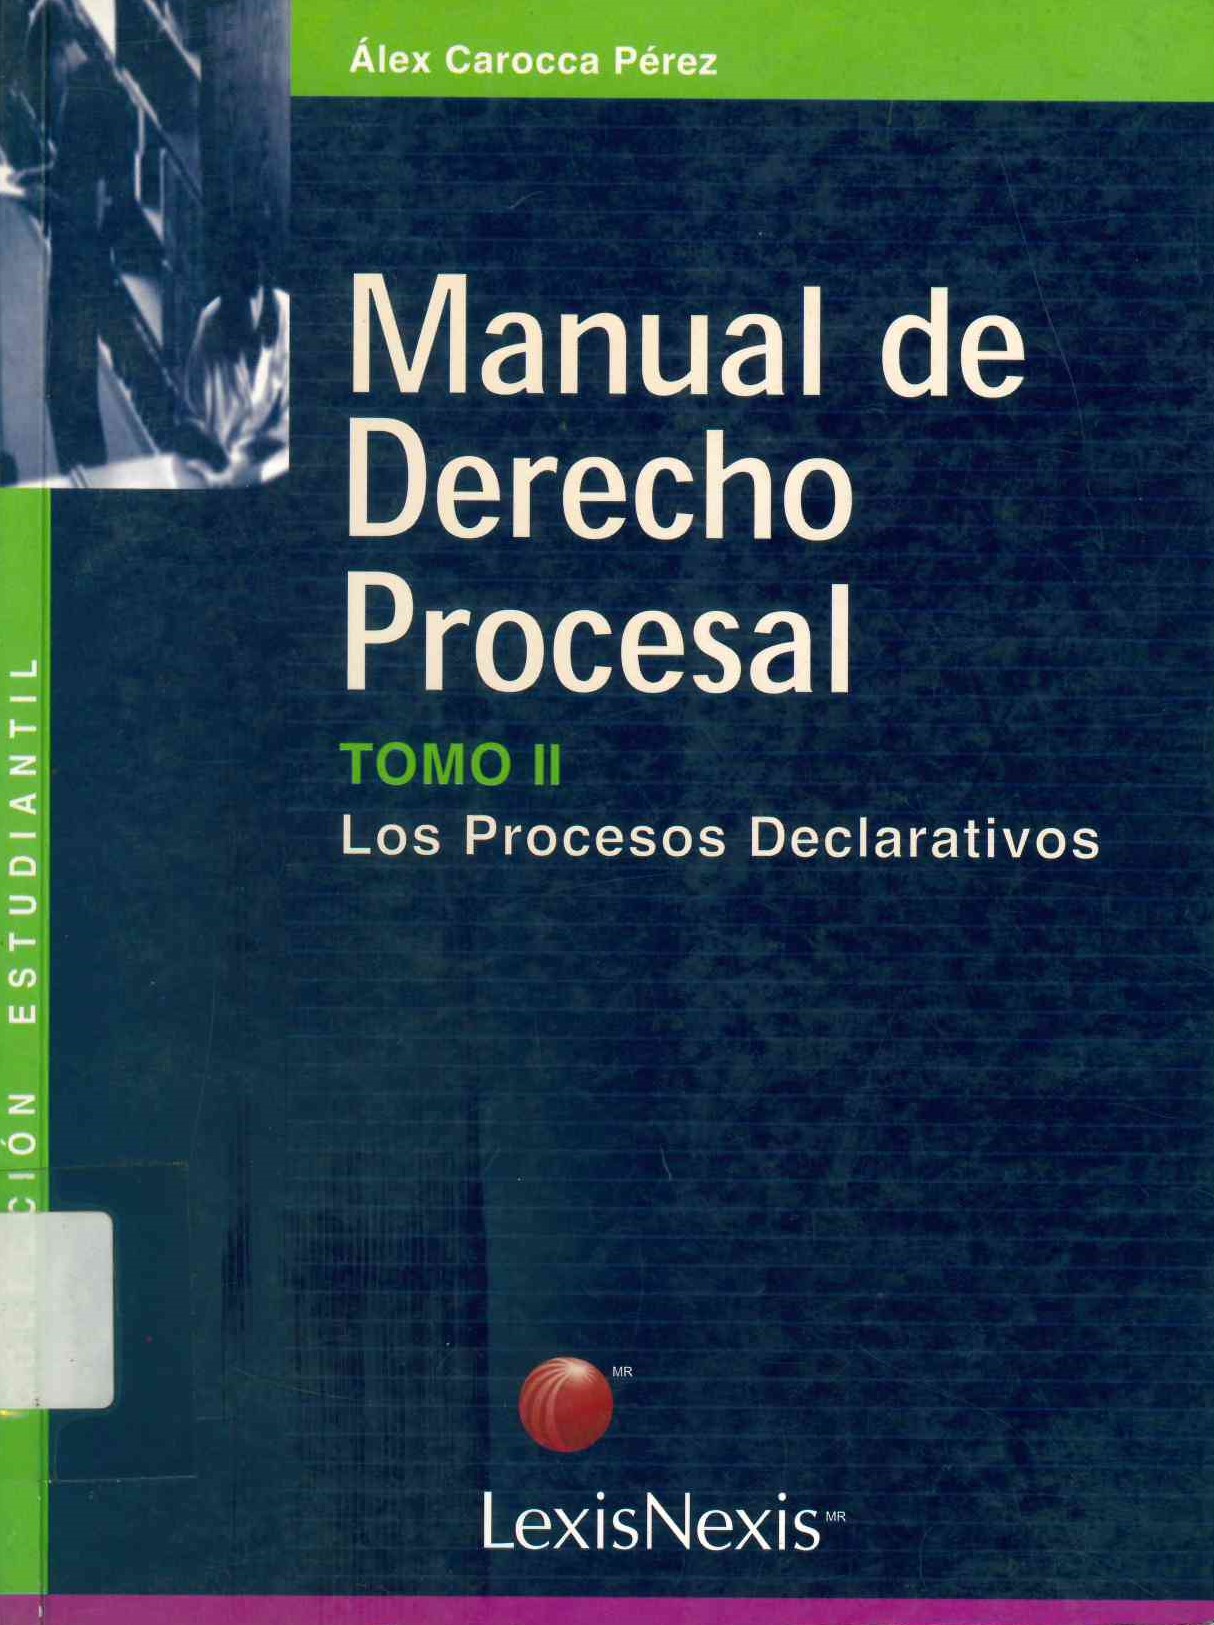 Manual de derecho procesal